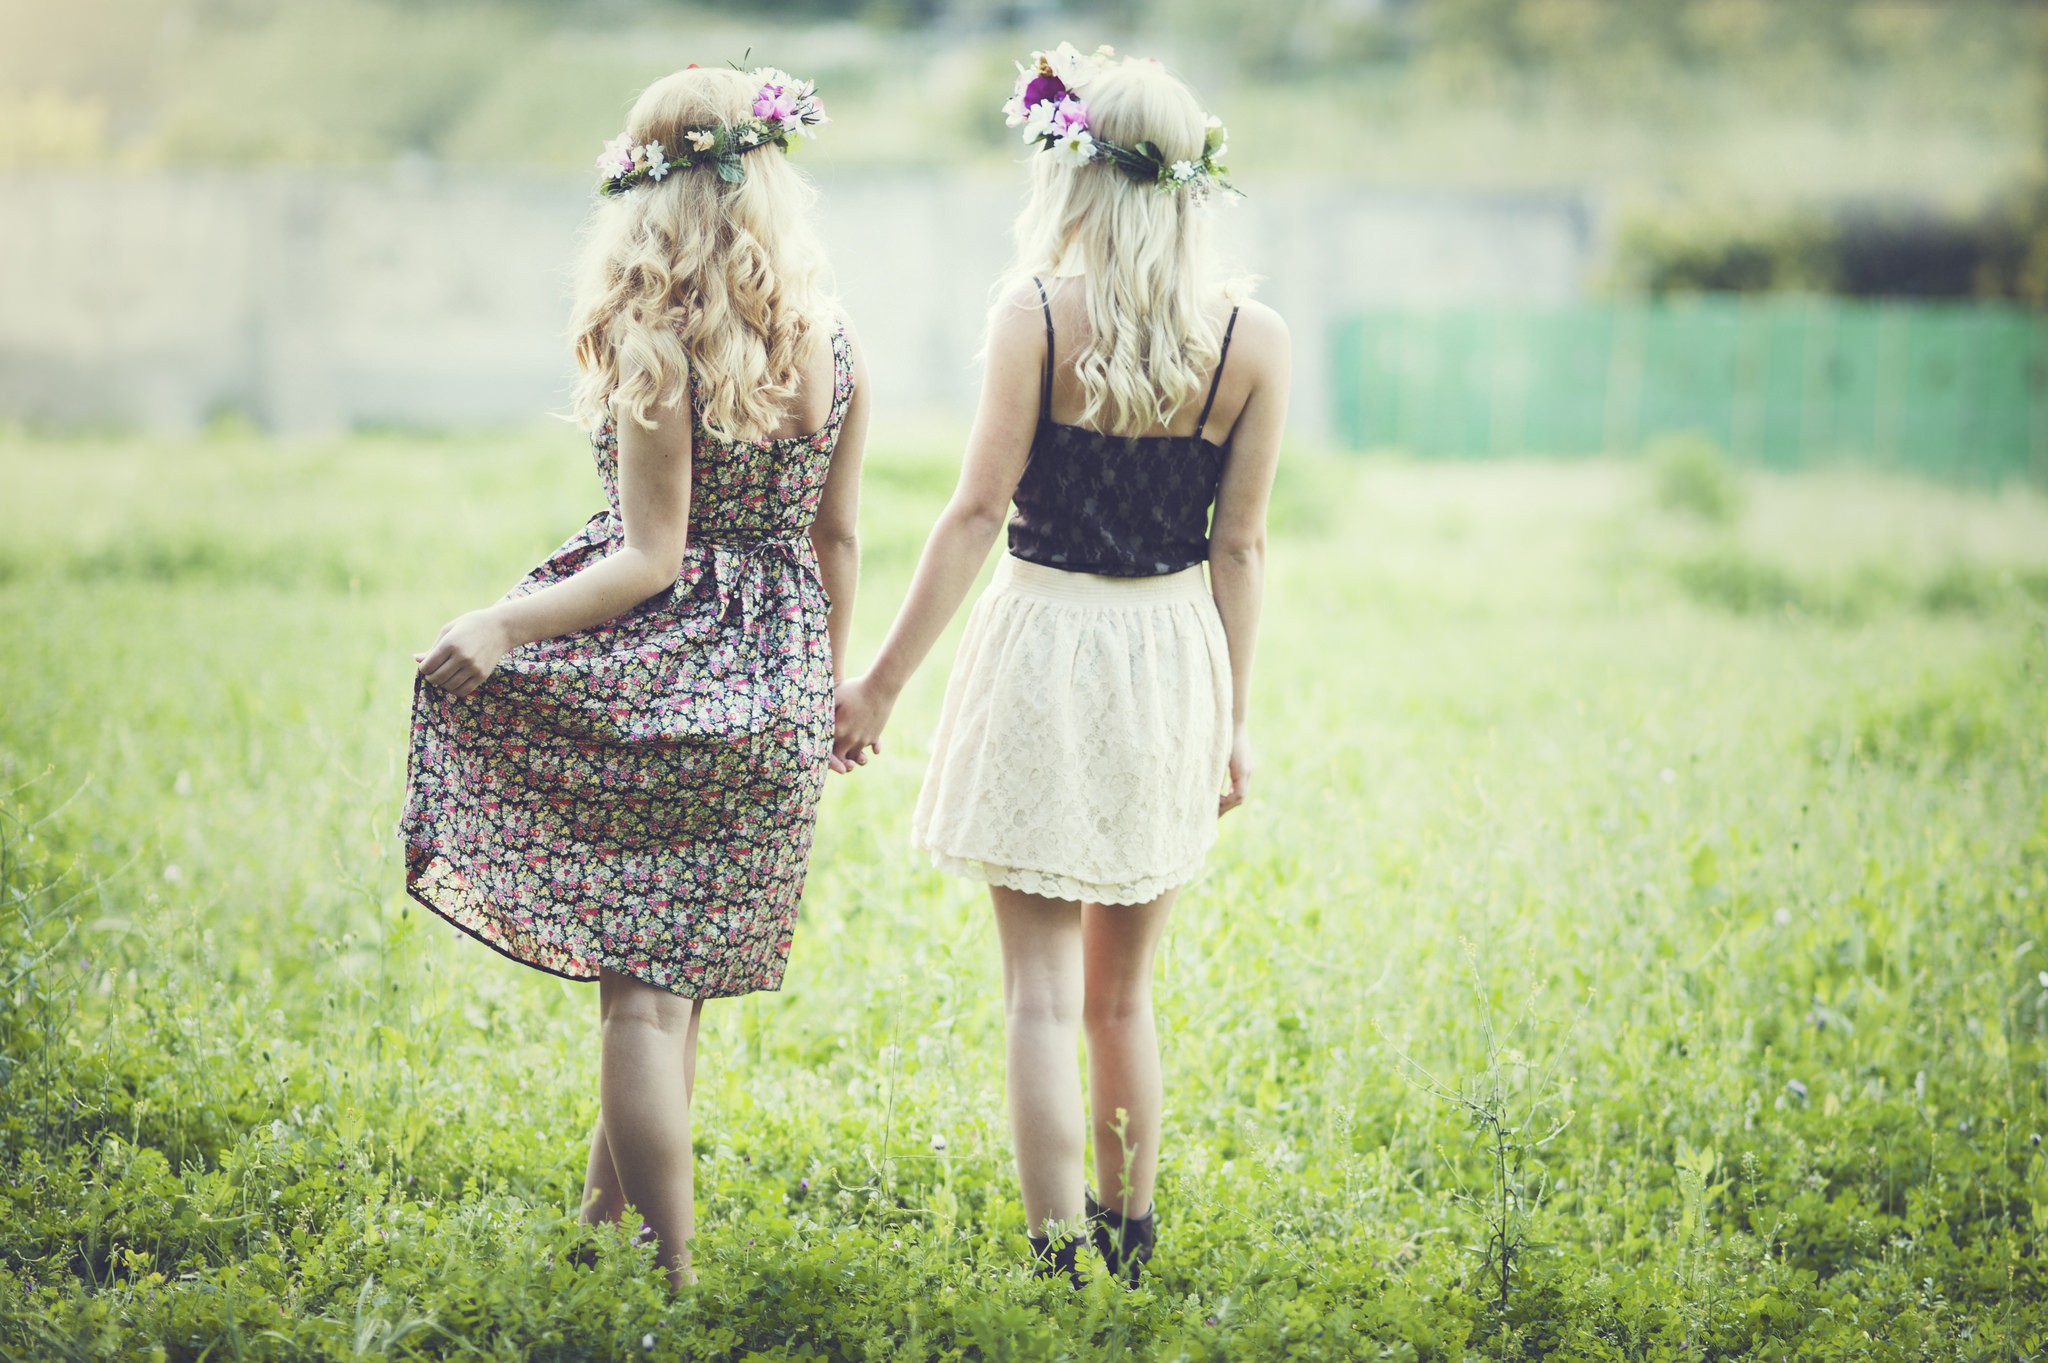 People 2048x1363 women blonde grass plains women outdoors outdoors flower crown two women standing plants dress summer dress